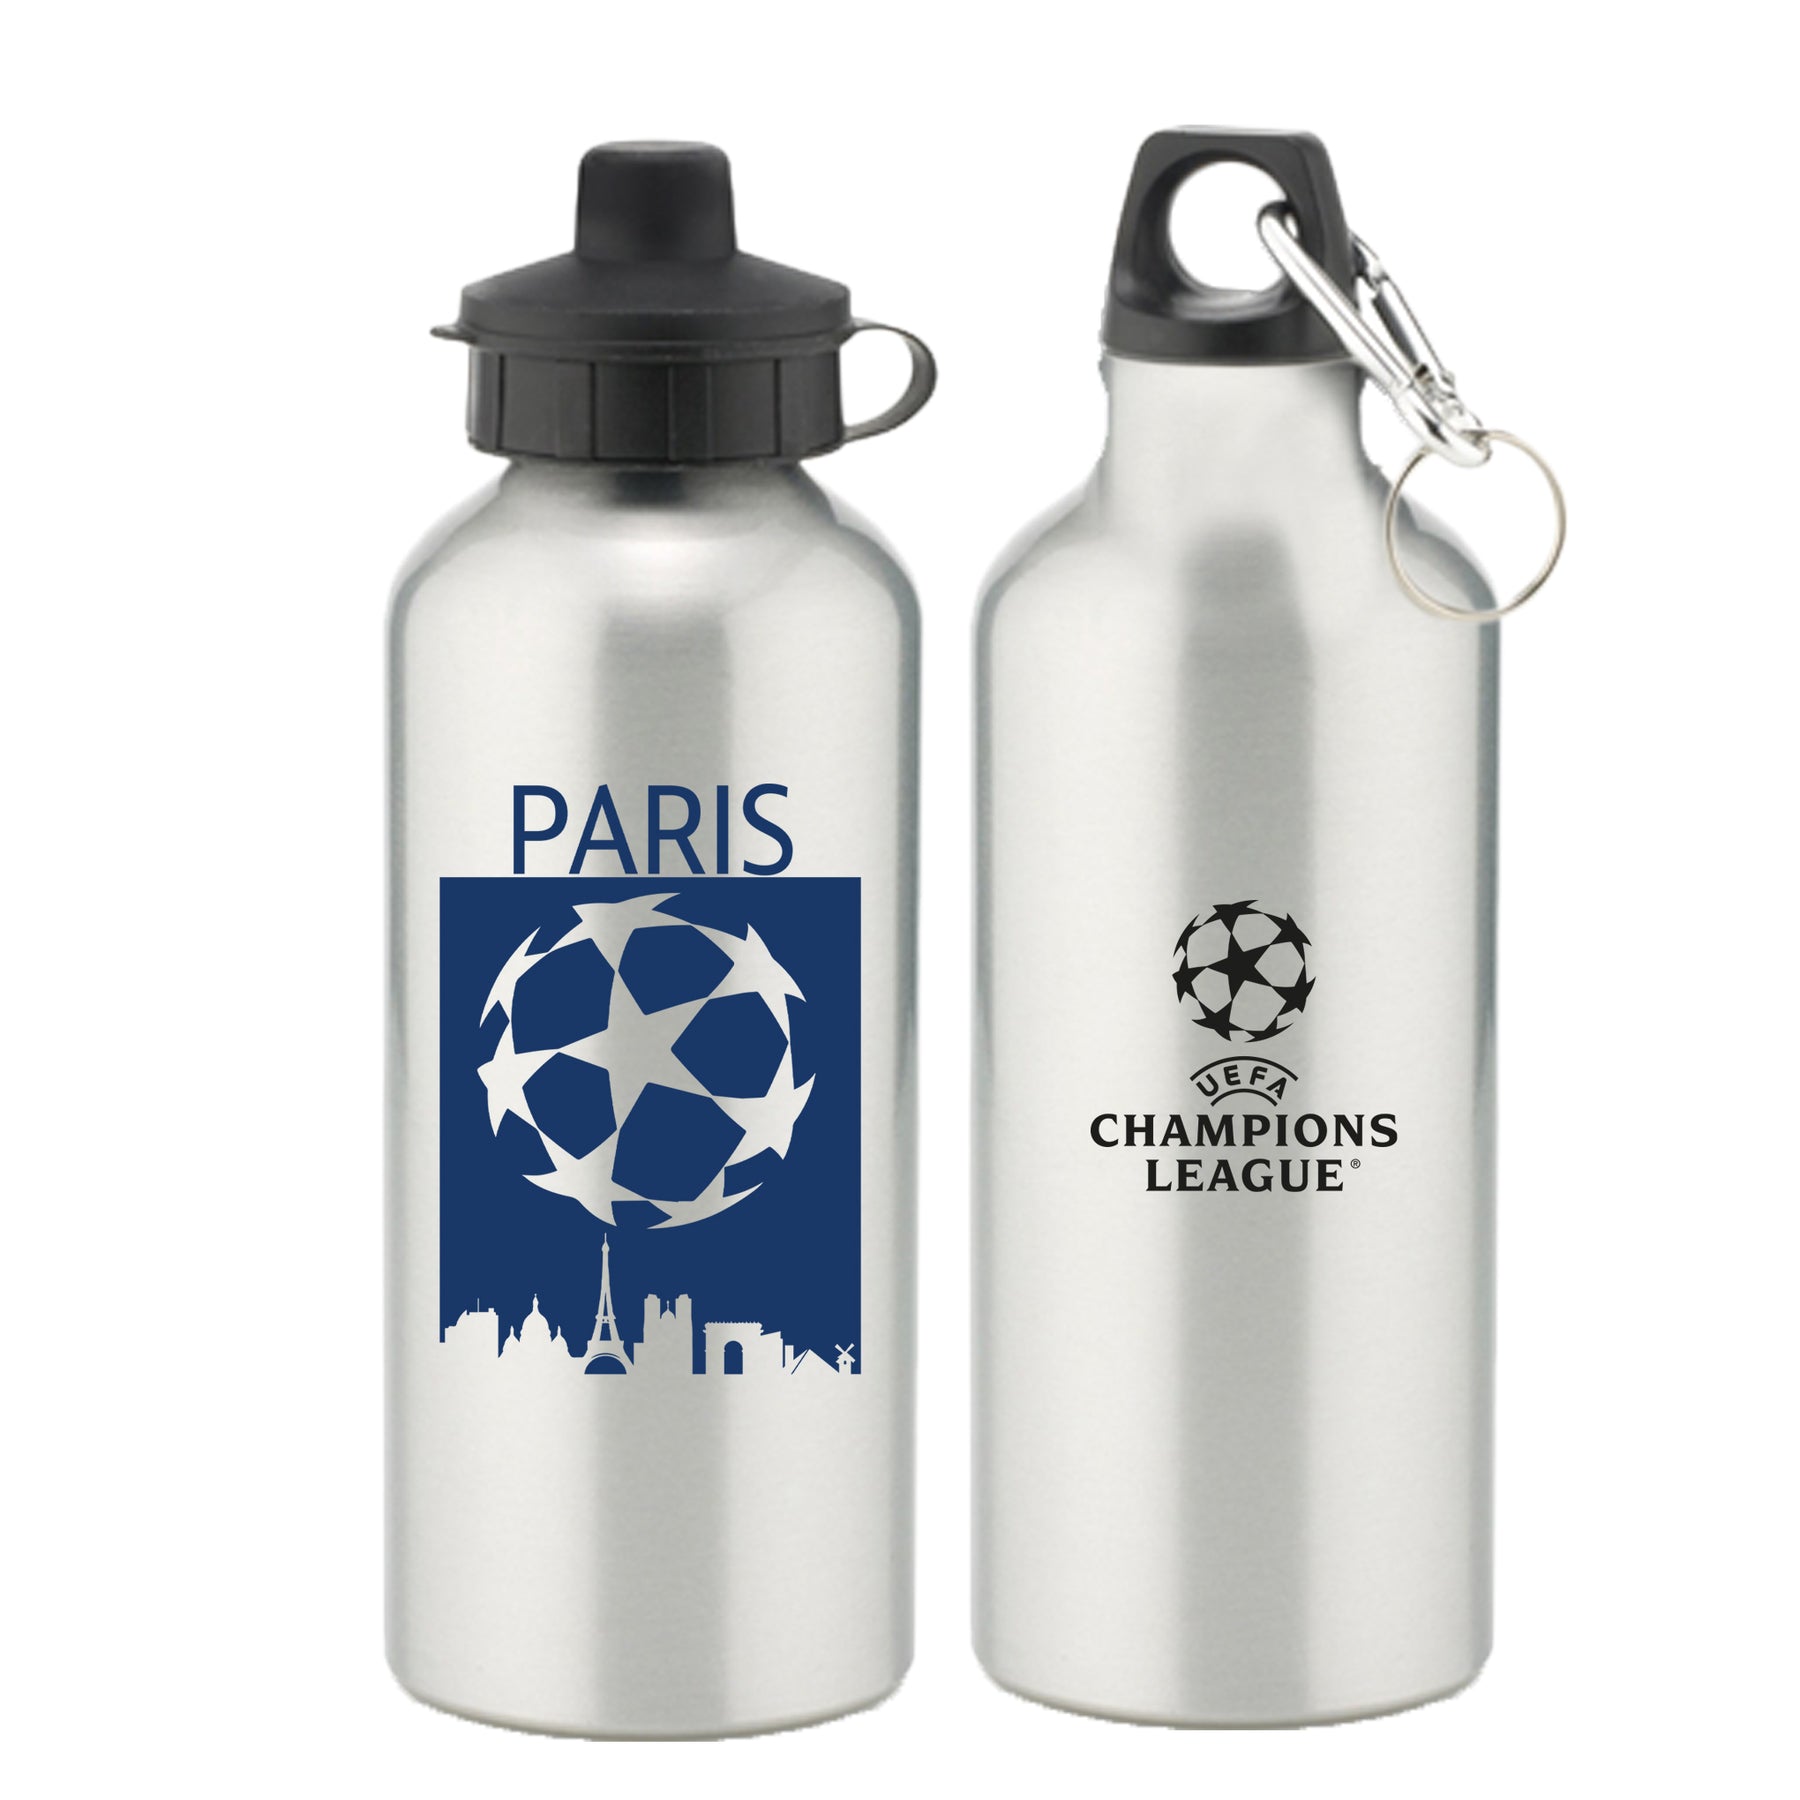 Champions League Paris City Skyline Aluminium Water Bottle